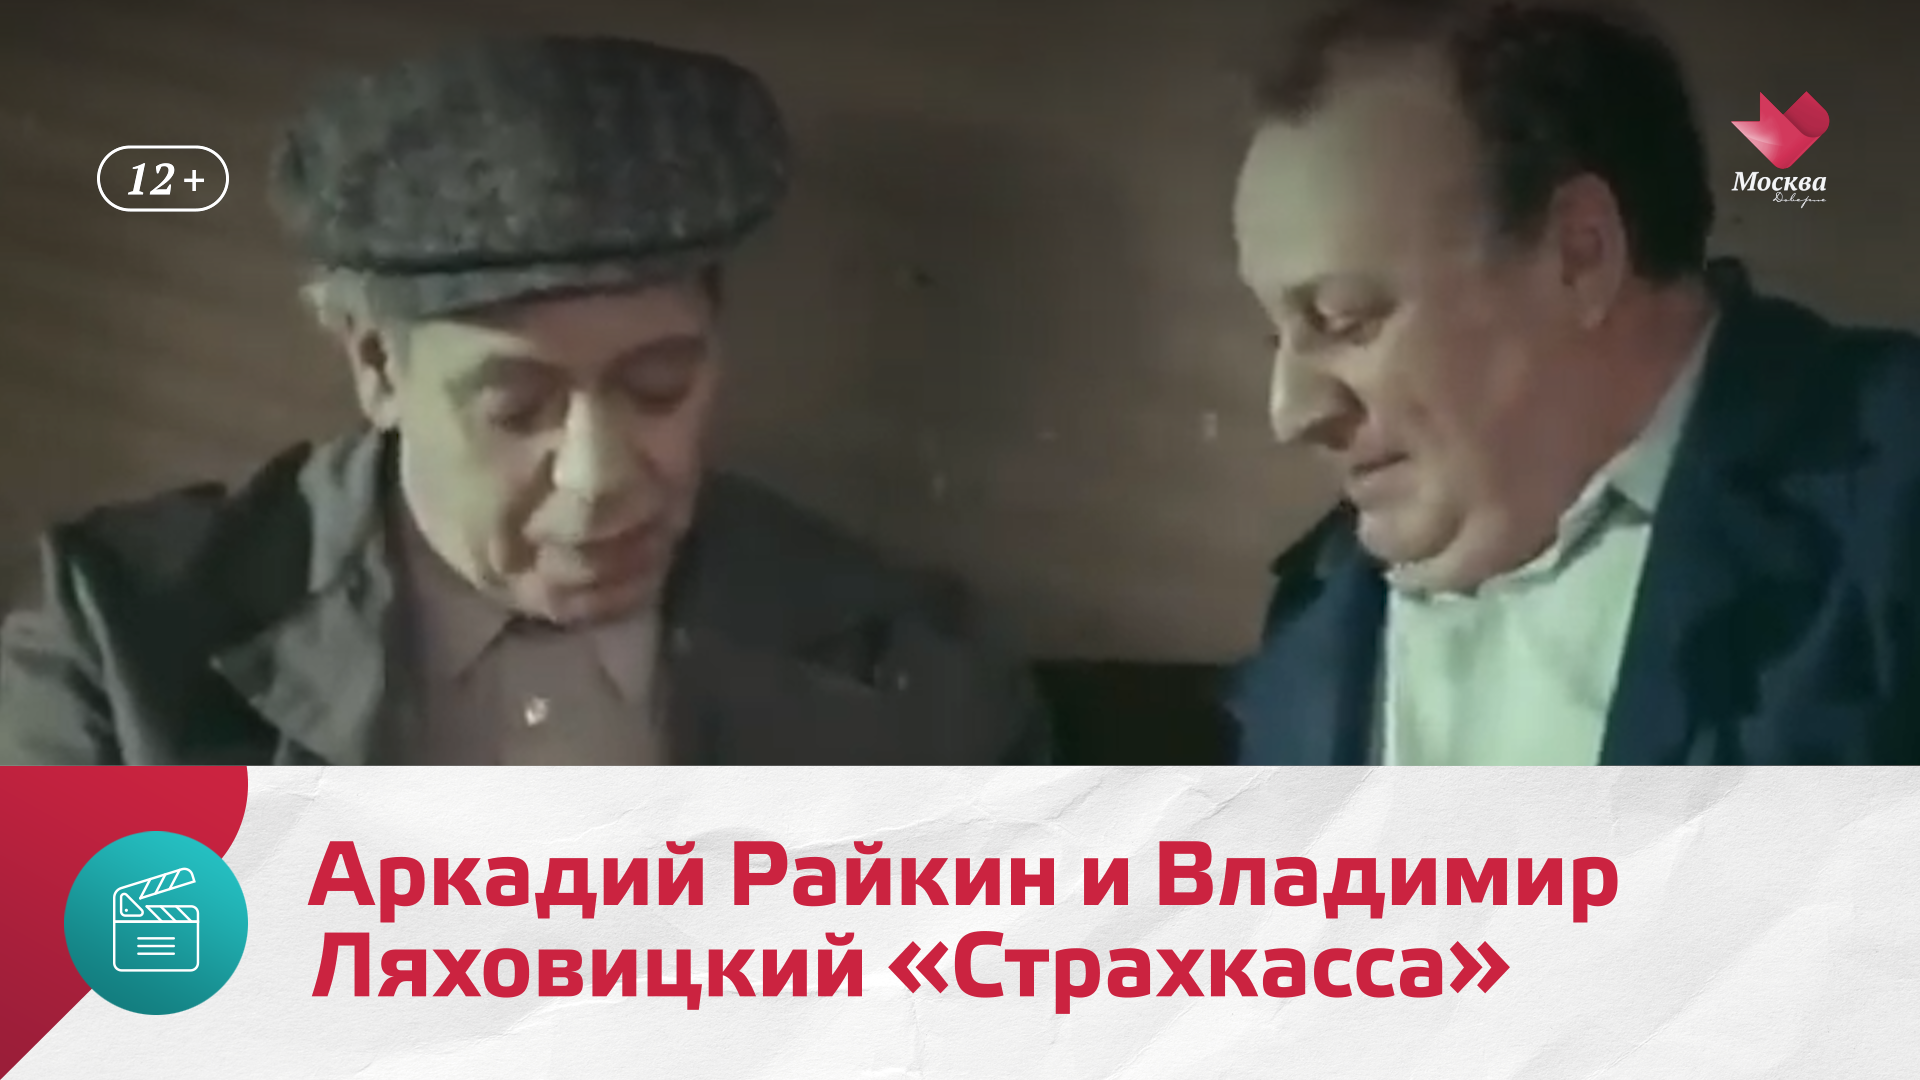 Аркадий Райкин и Владимир Ляховицкий «Страхкасса» — Москва Доверие